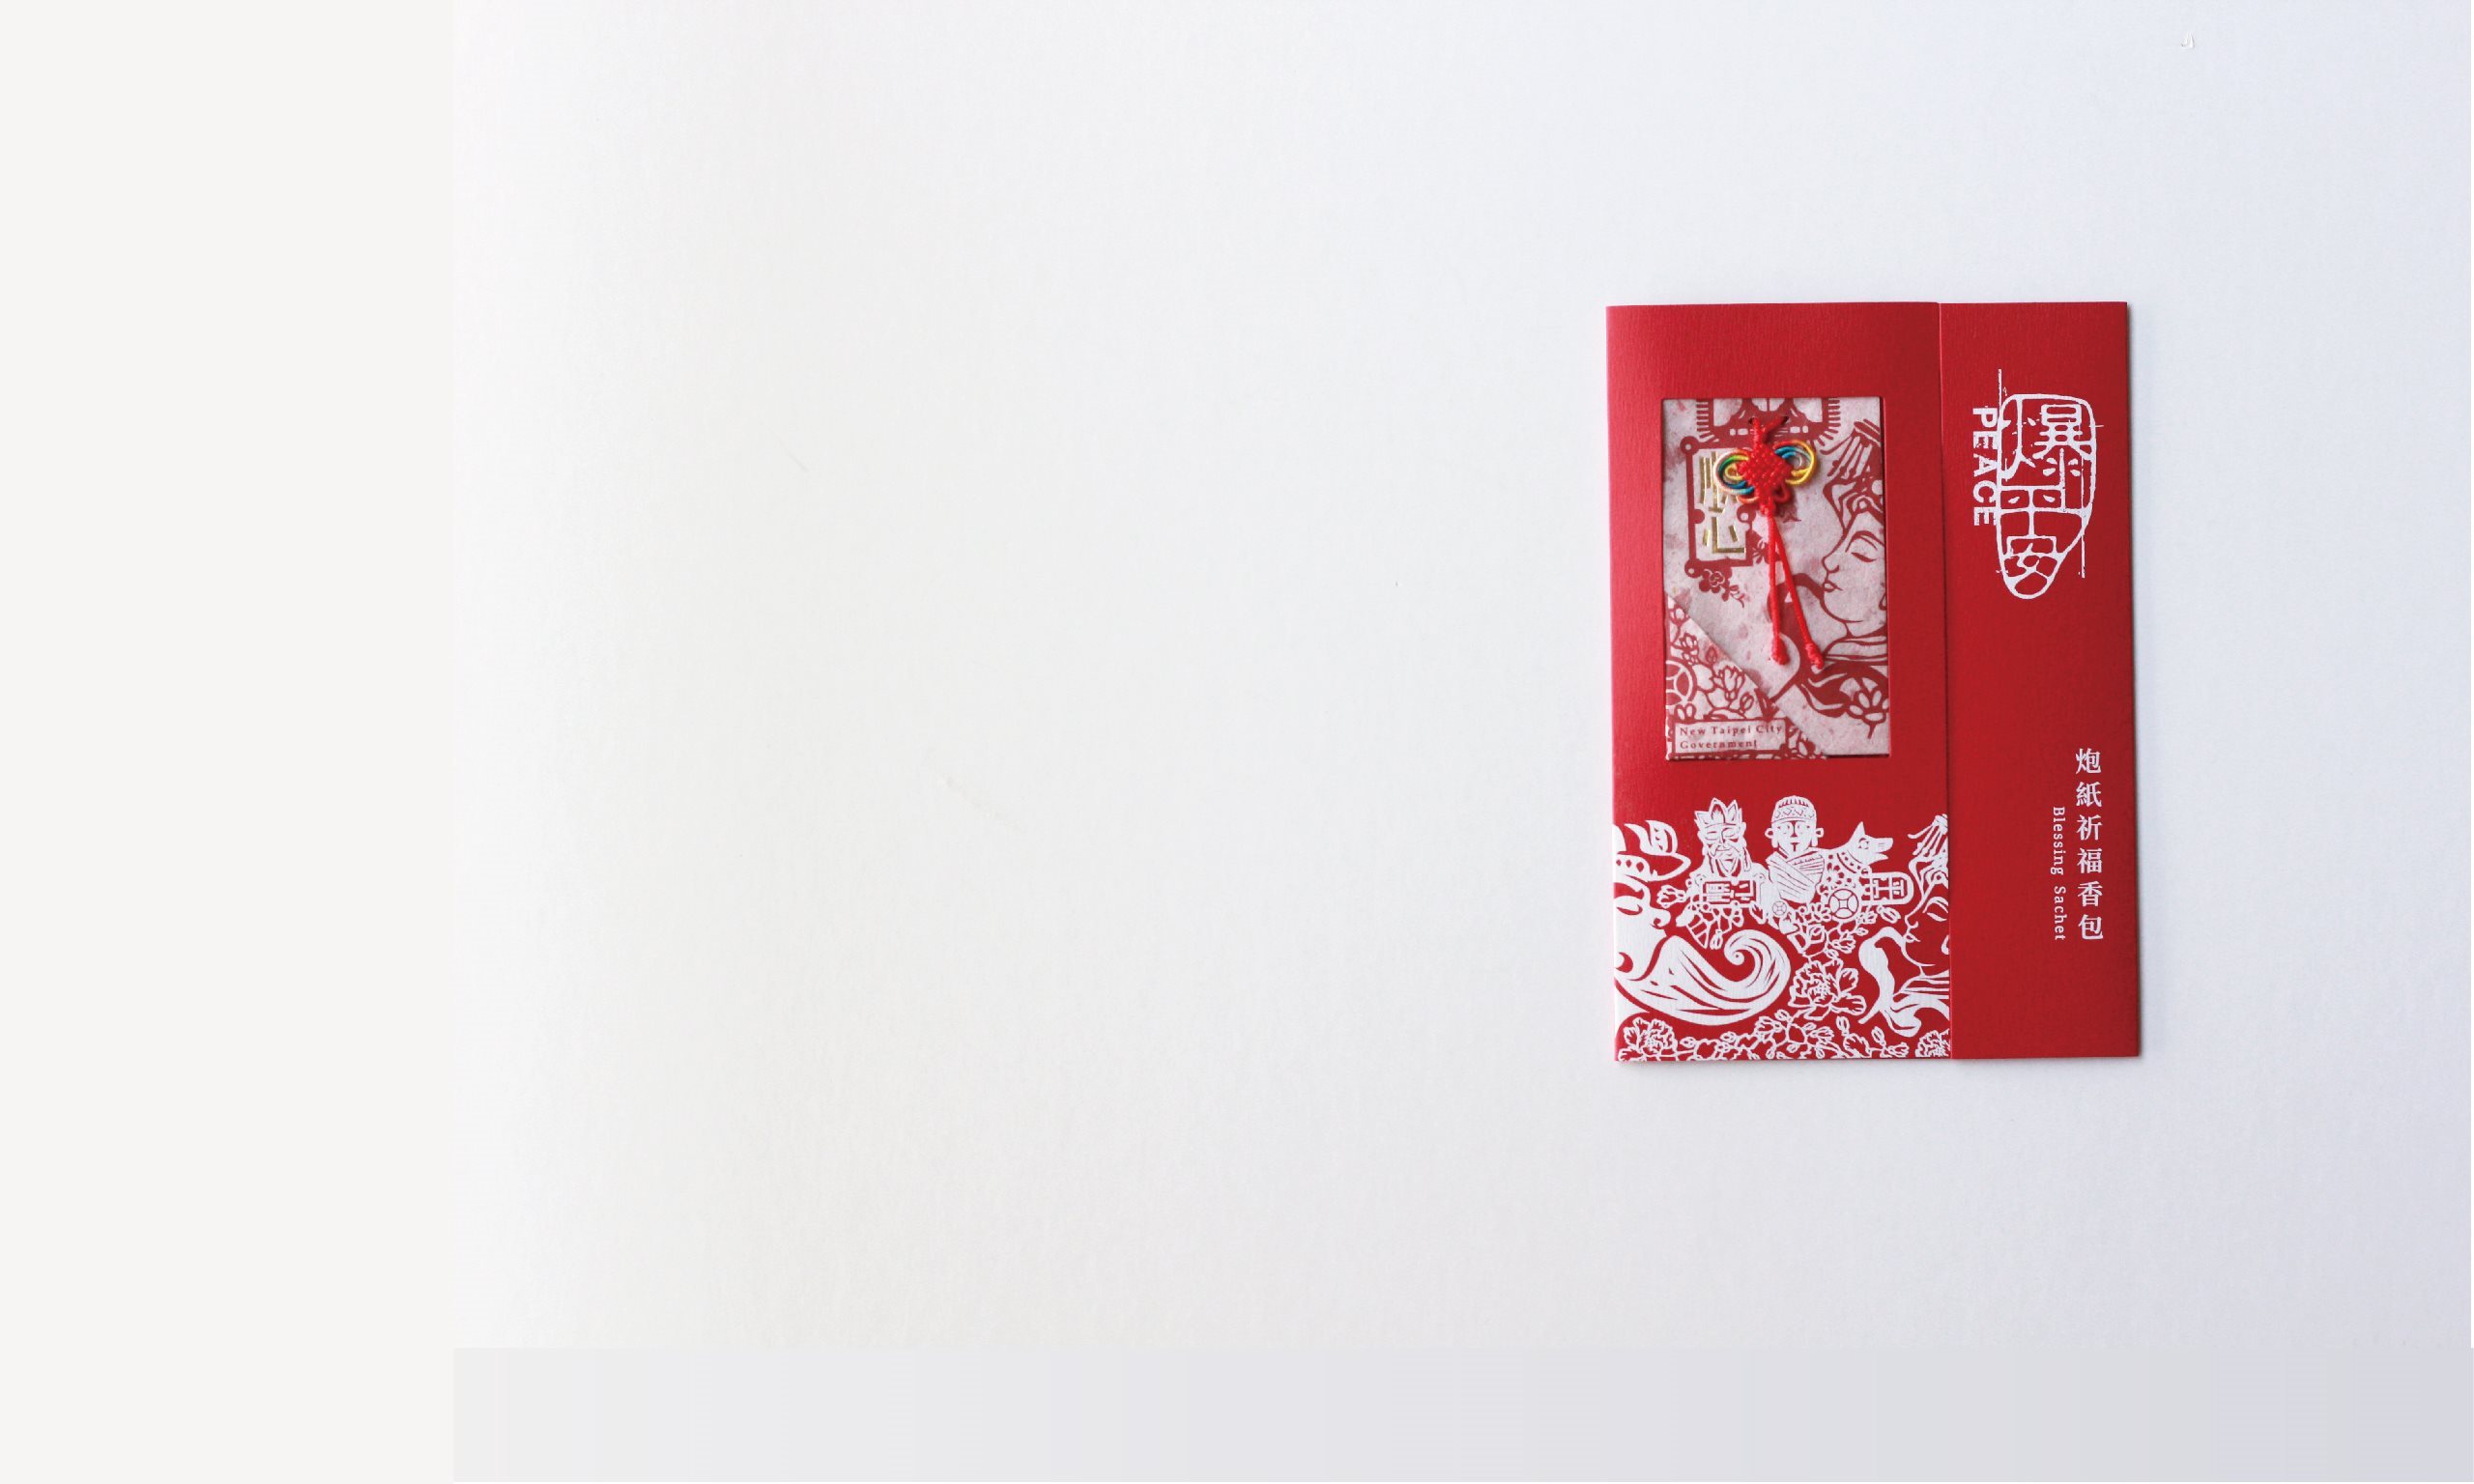 Firecracker-scraps Blessing Sachet - Taiwan packaging design